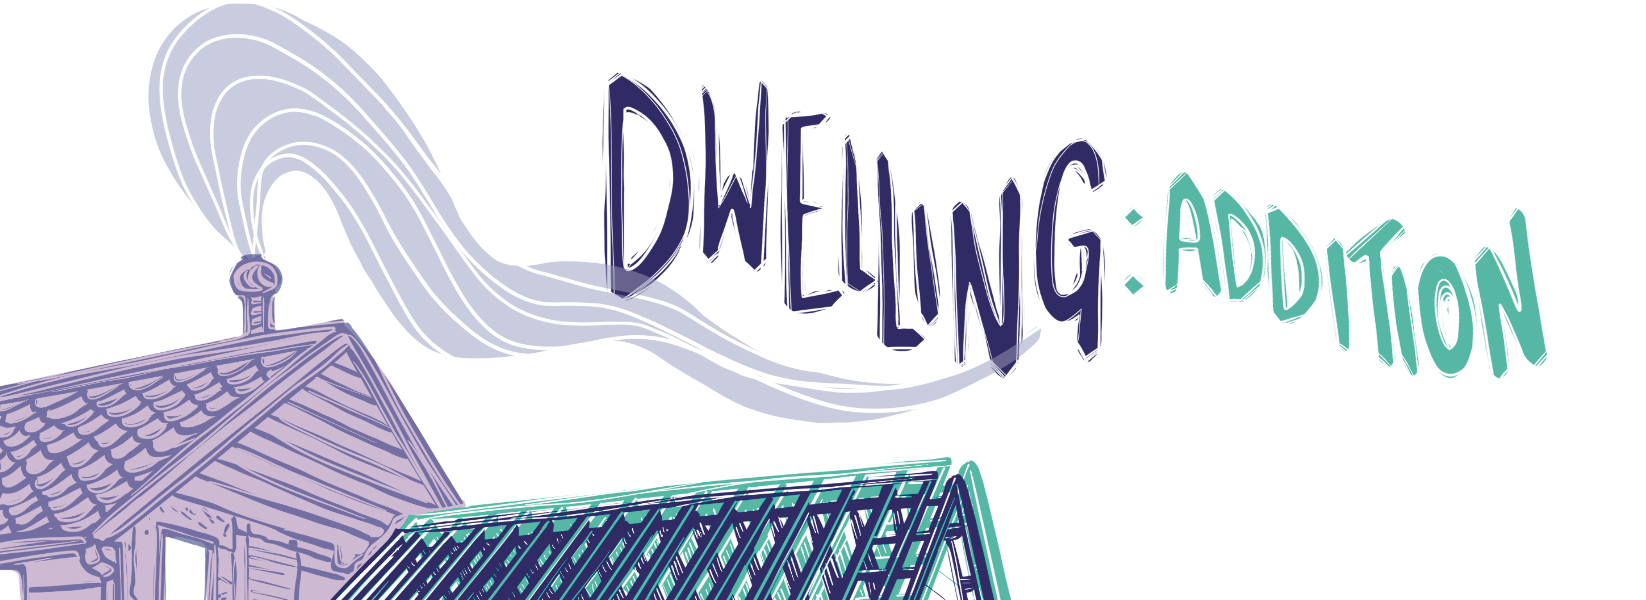 Dwelling: Addition